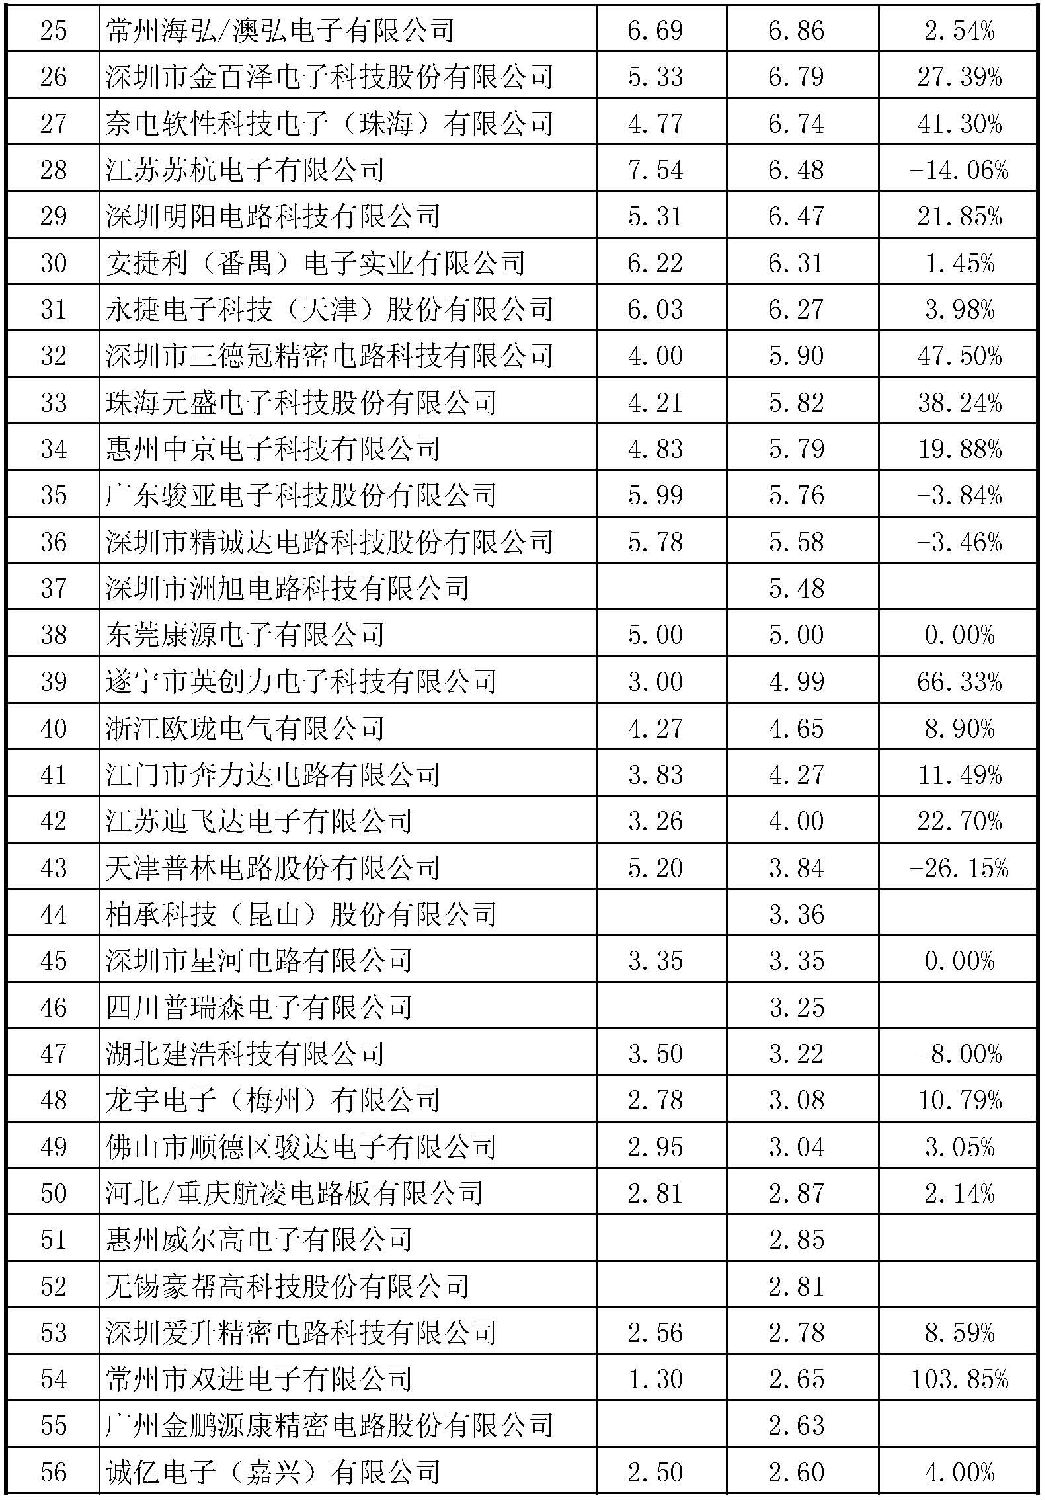 2015年CPCA中国线路板行业内资企业排行榜正式出炉了，来看看你家榜上有名吗？